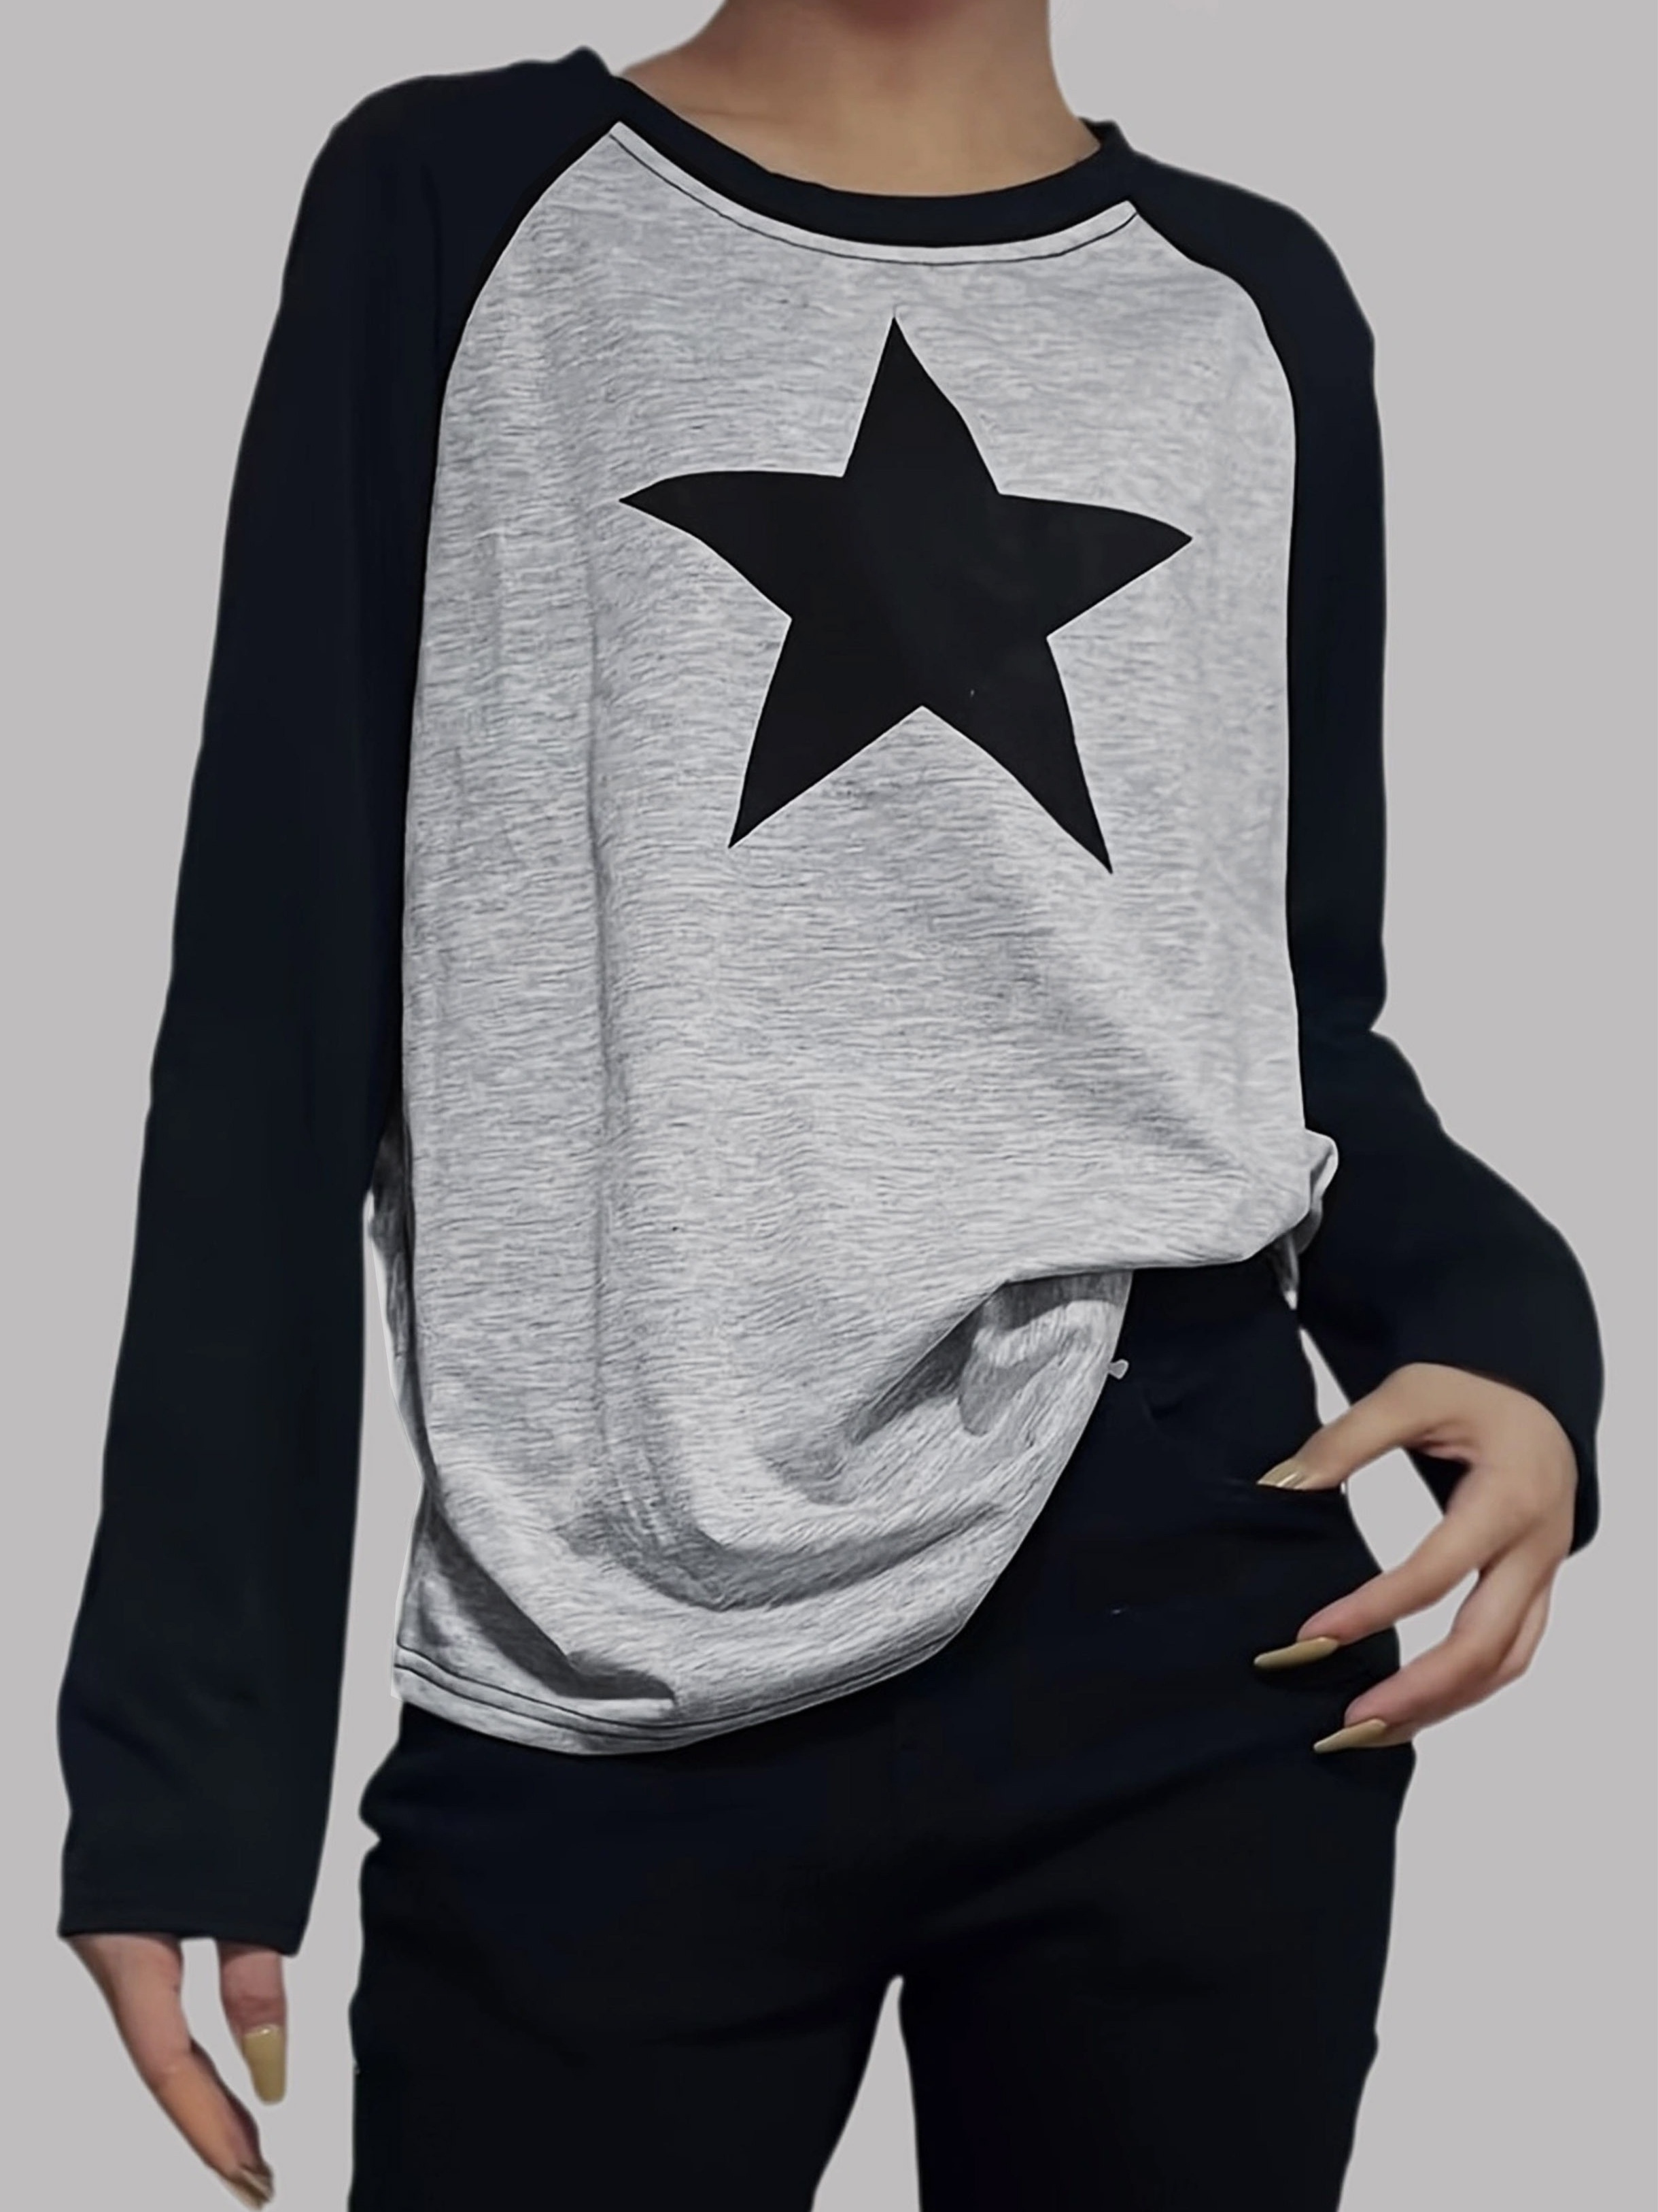 Star Print Crew Neck Tシャツ Y2KロングスリーブTシャツ 春と秋のため